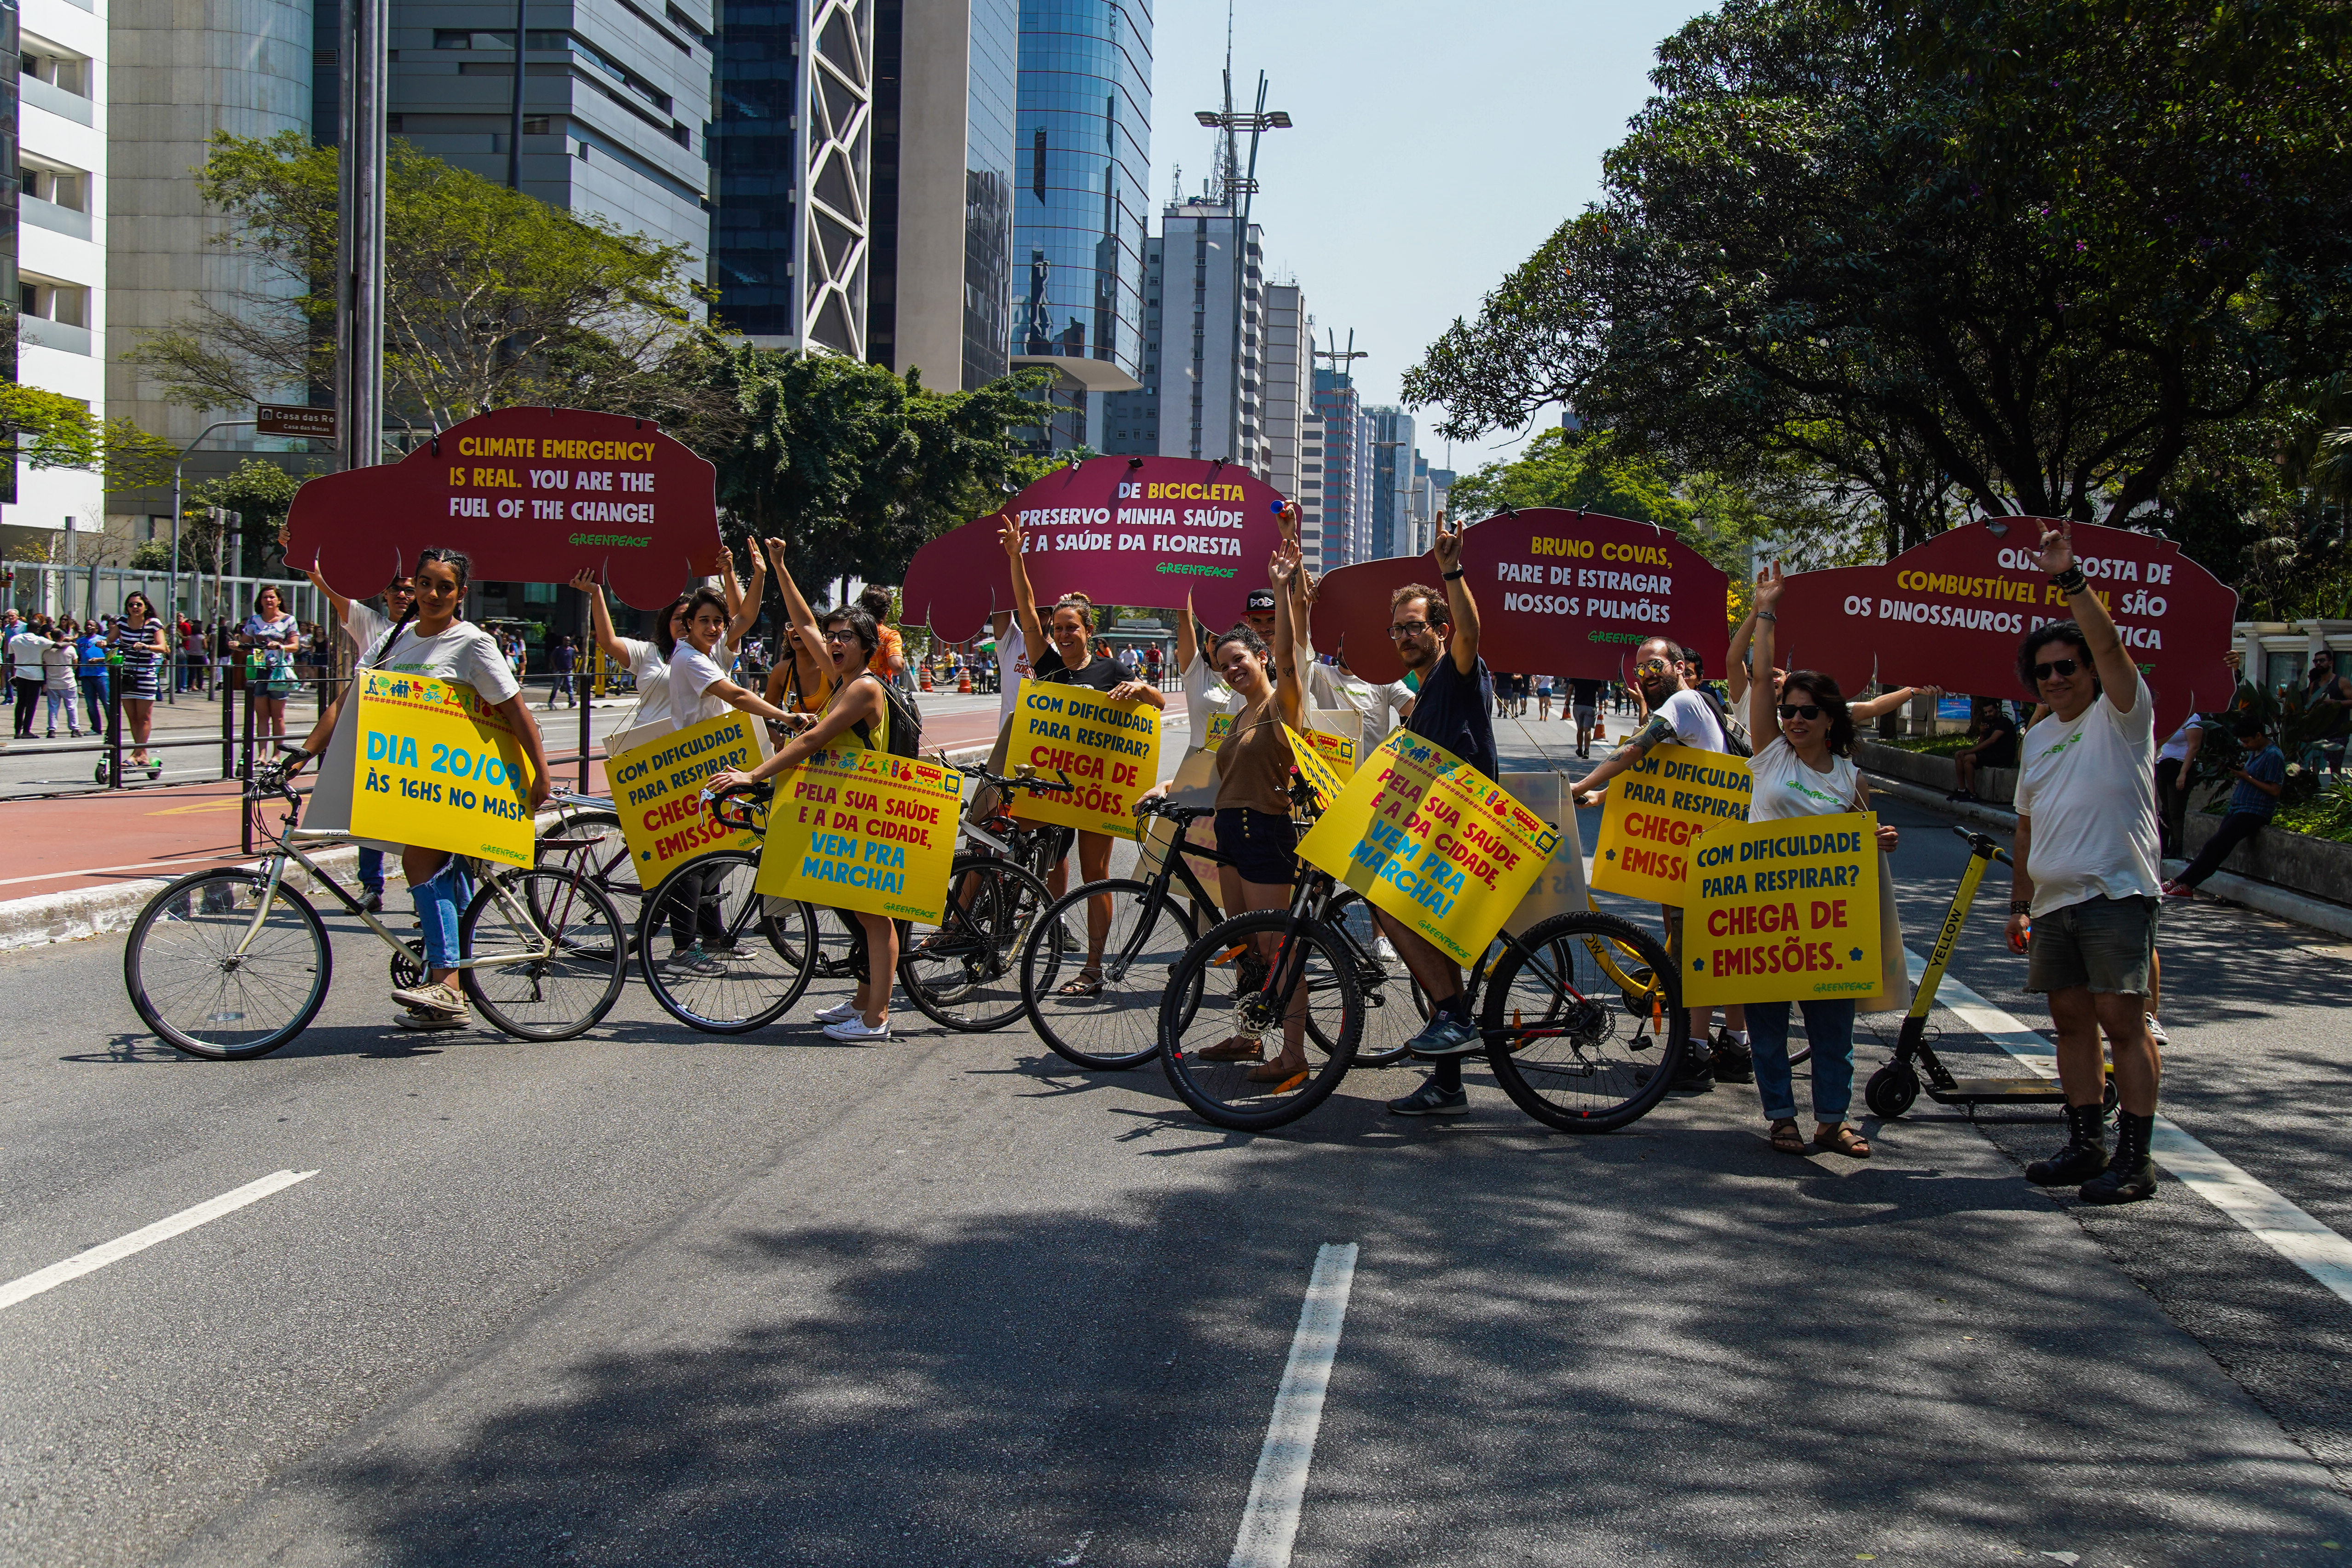 Ativistas do Greenpeace levantam placas com os dizeres "De bicicleta preservo minha saúde e a saúde da floresta", "Bruno Covas, pare de estragar nossos pulmões", Quem gosta de combustível fóssil são os dinossauros da política", com Avenida Paulista em perspectiva, dia de sol